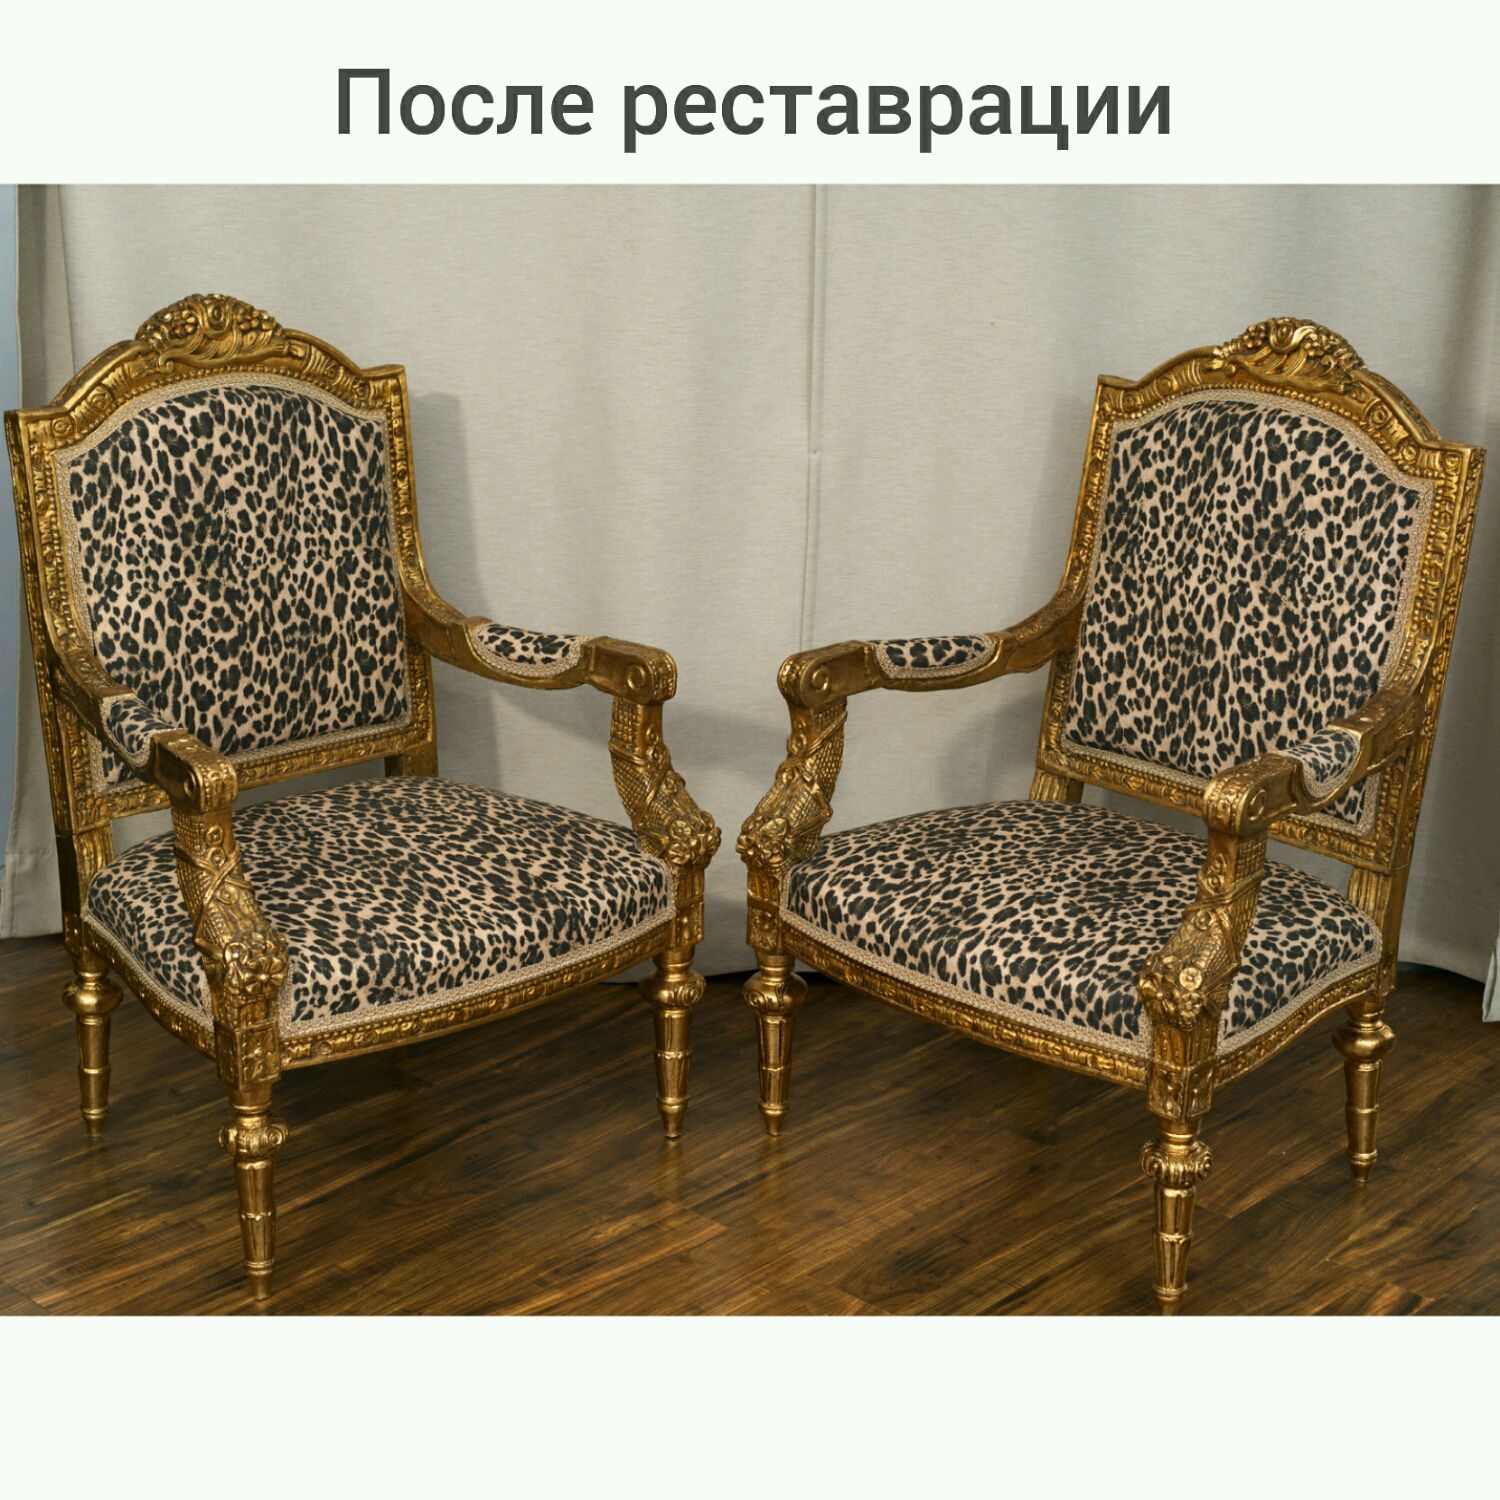 Золоченые кресла чиновников